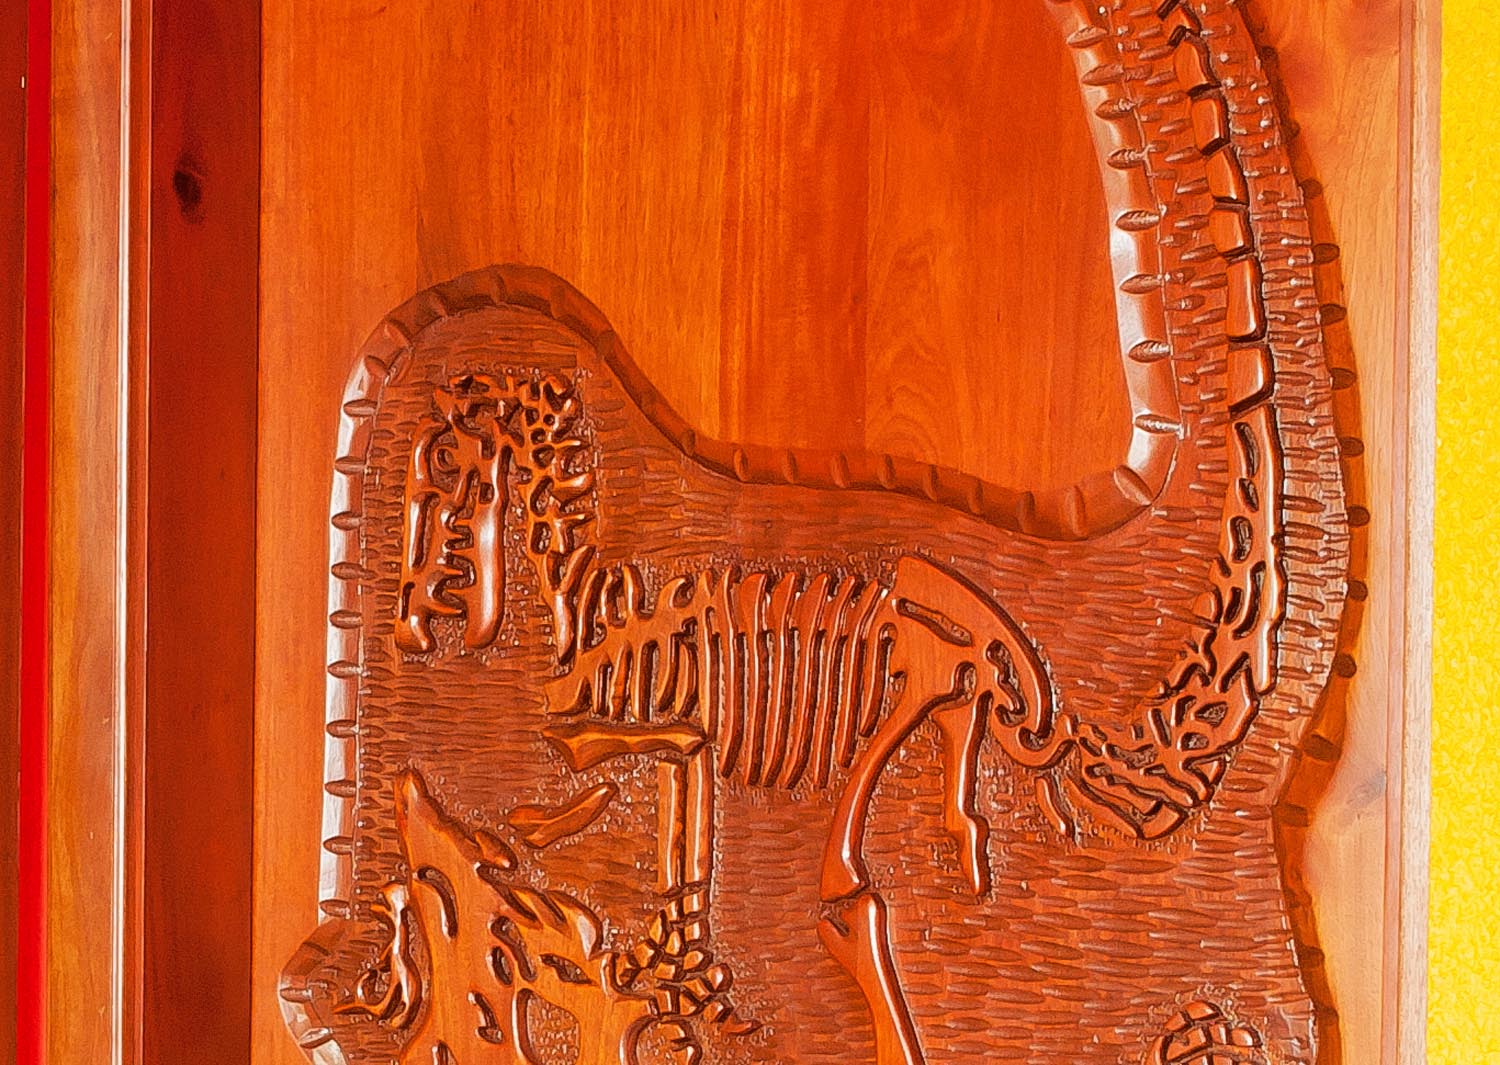 Dinosaur skeleton carving. Mahogany, light walnut stain.